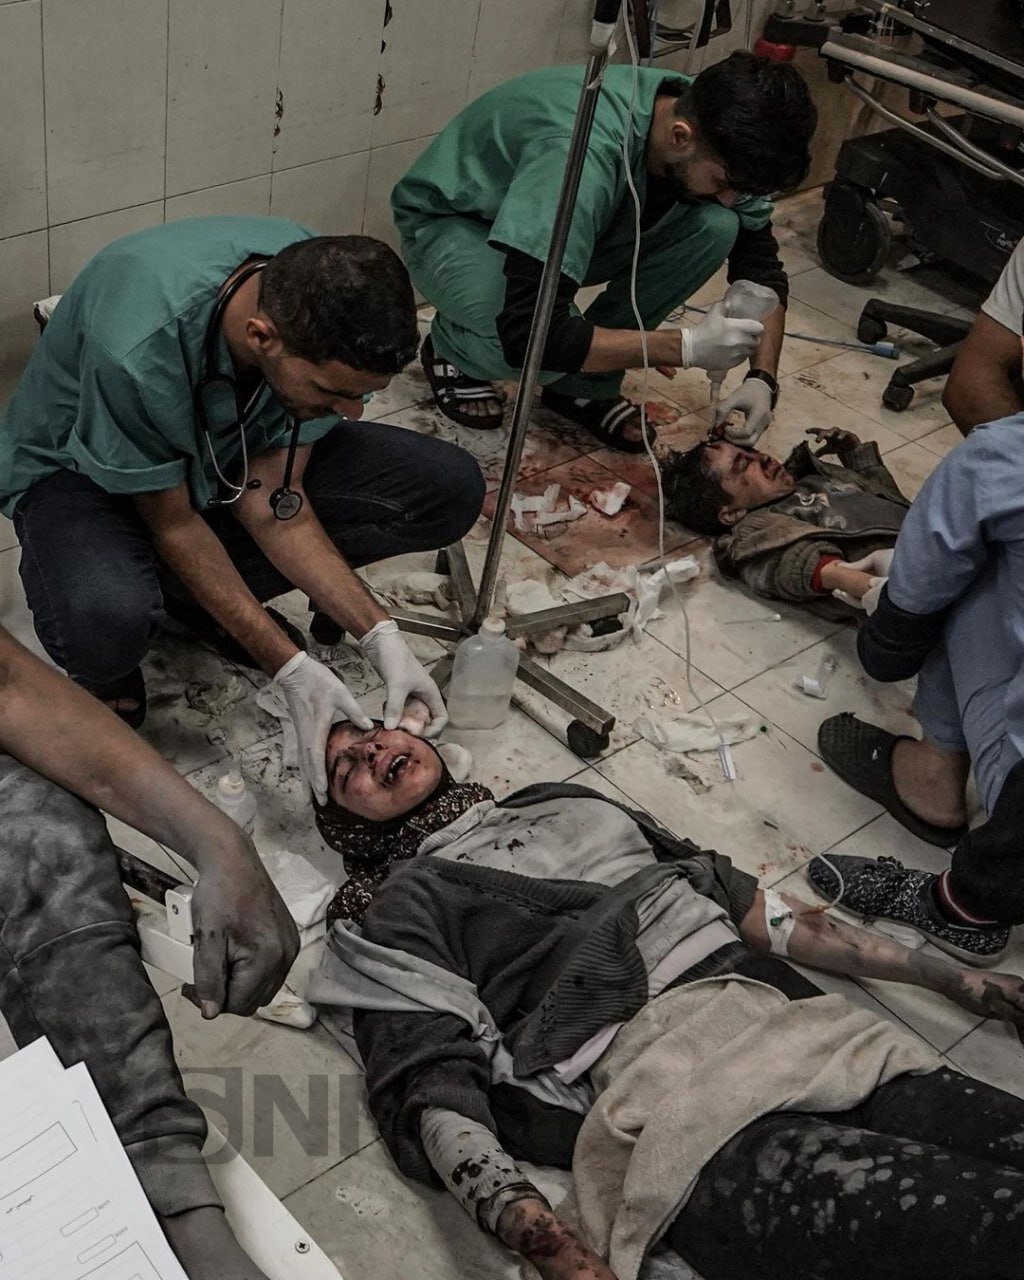 (۱6+) تصاویر دلخراش از نوجوان مجروح فلسطینی و مادرش | ببینید